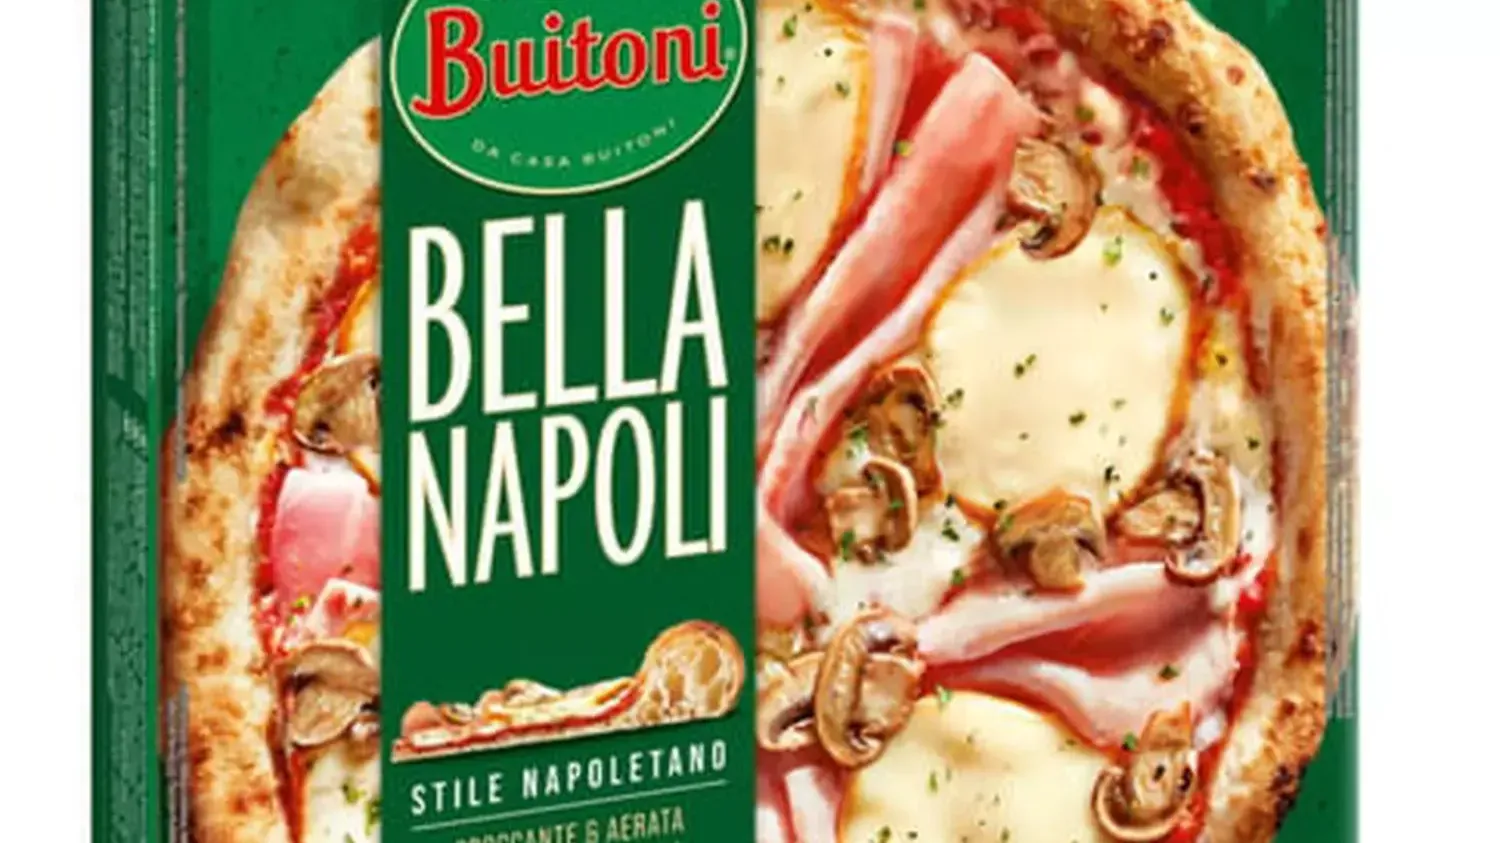 Pizza Bella Napoli, une autre gamme au coeur du scandale chez Buitoni.